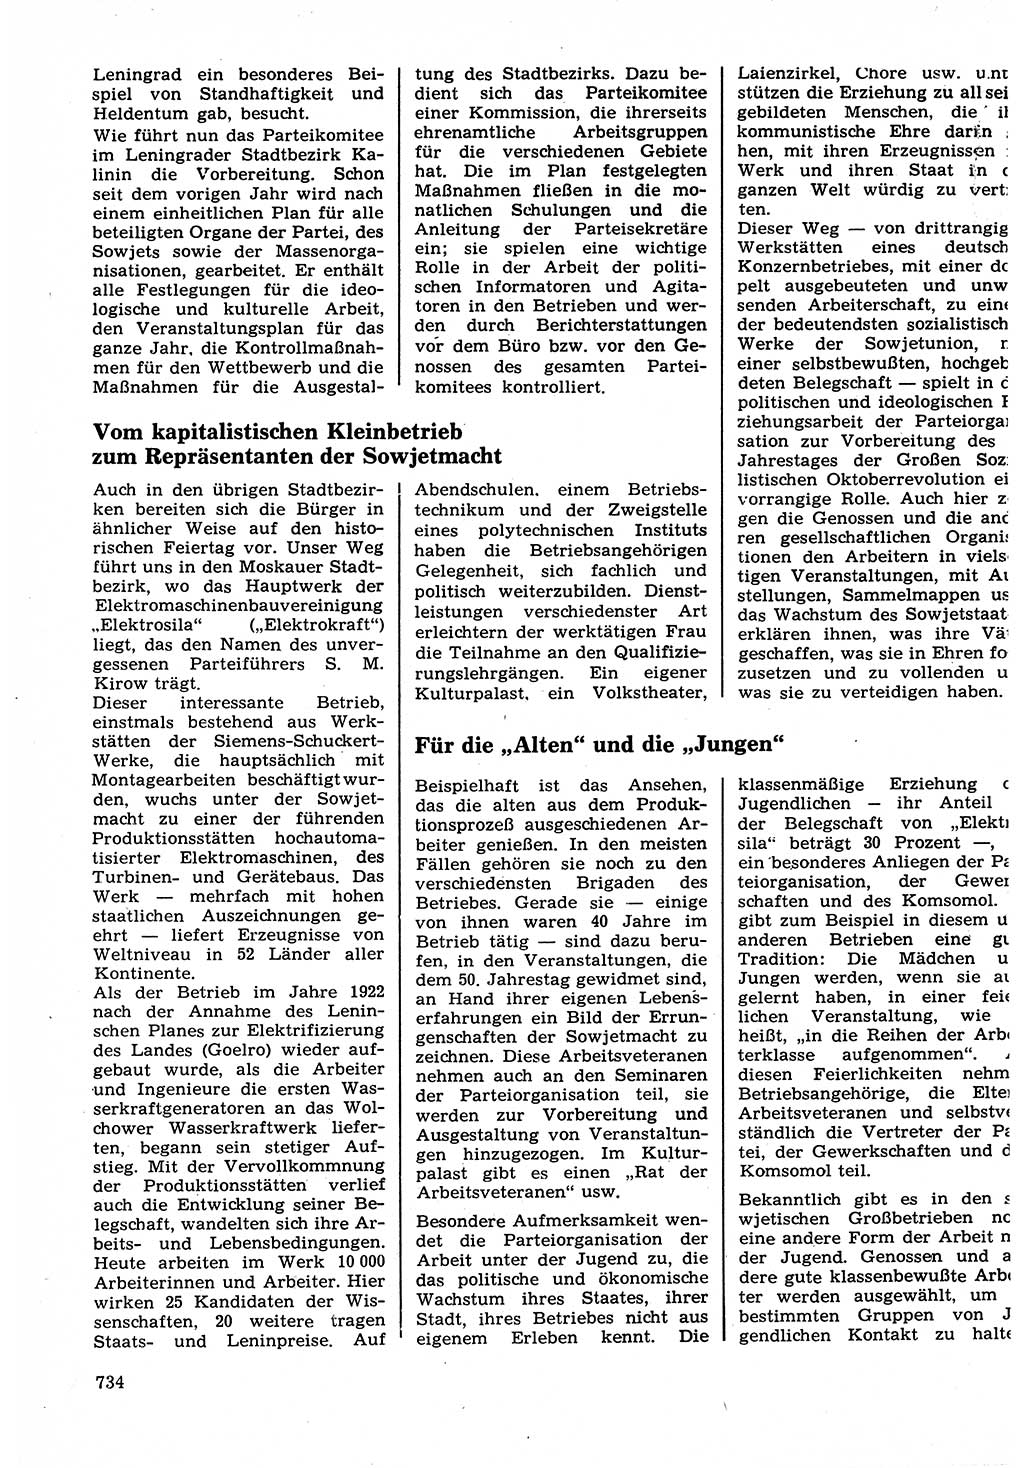 Neuer Weg (NW), Organ des Zentralkomitees (ZK) der SED (Sozialistische Einheitspartei Deutschlands) für Fragen des Parteilebens, 22. Jahrgang [Deutsche Demokratische Republik (DDR)] 1967, Seite 734 (NW ZK SED DDR 1967, S. 734)